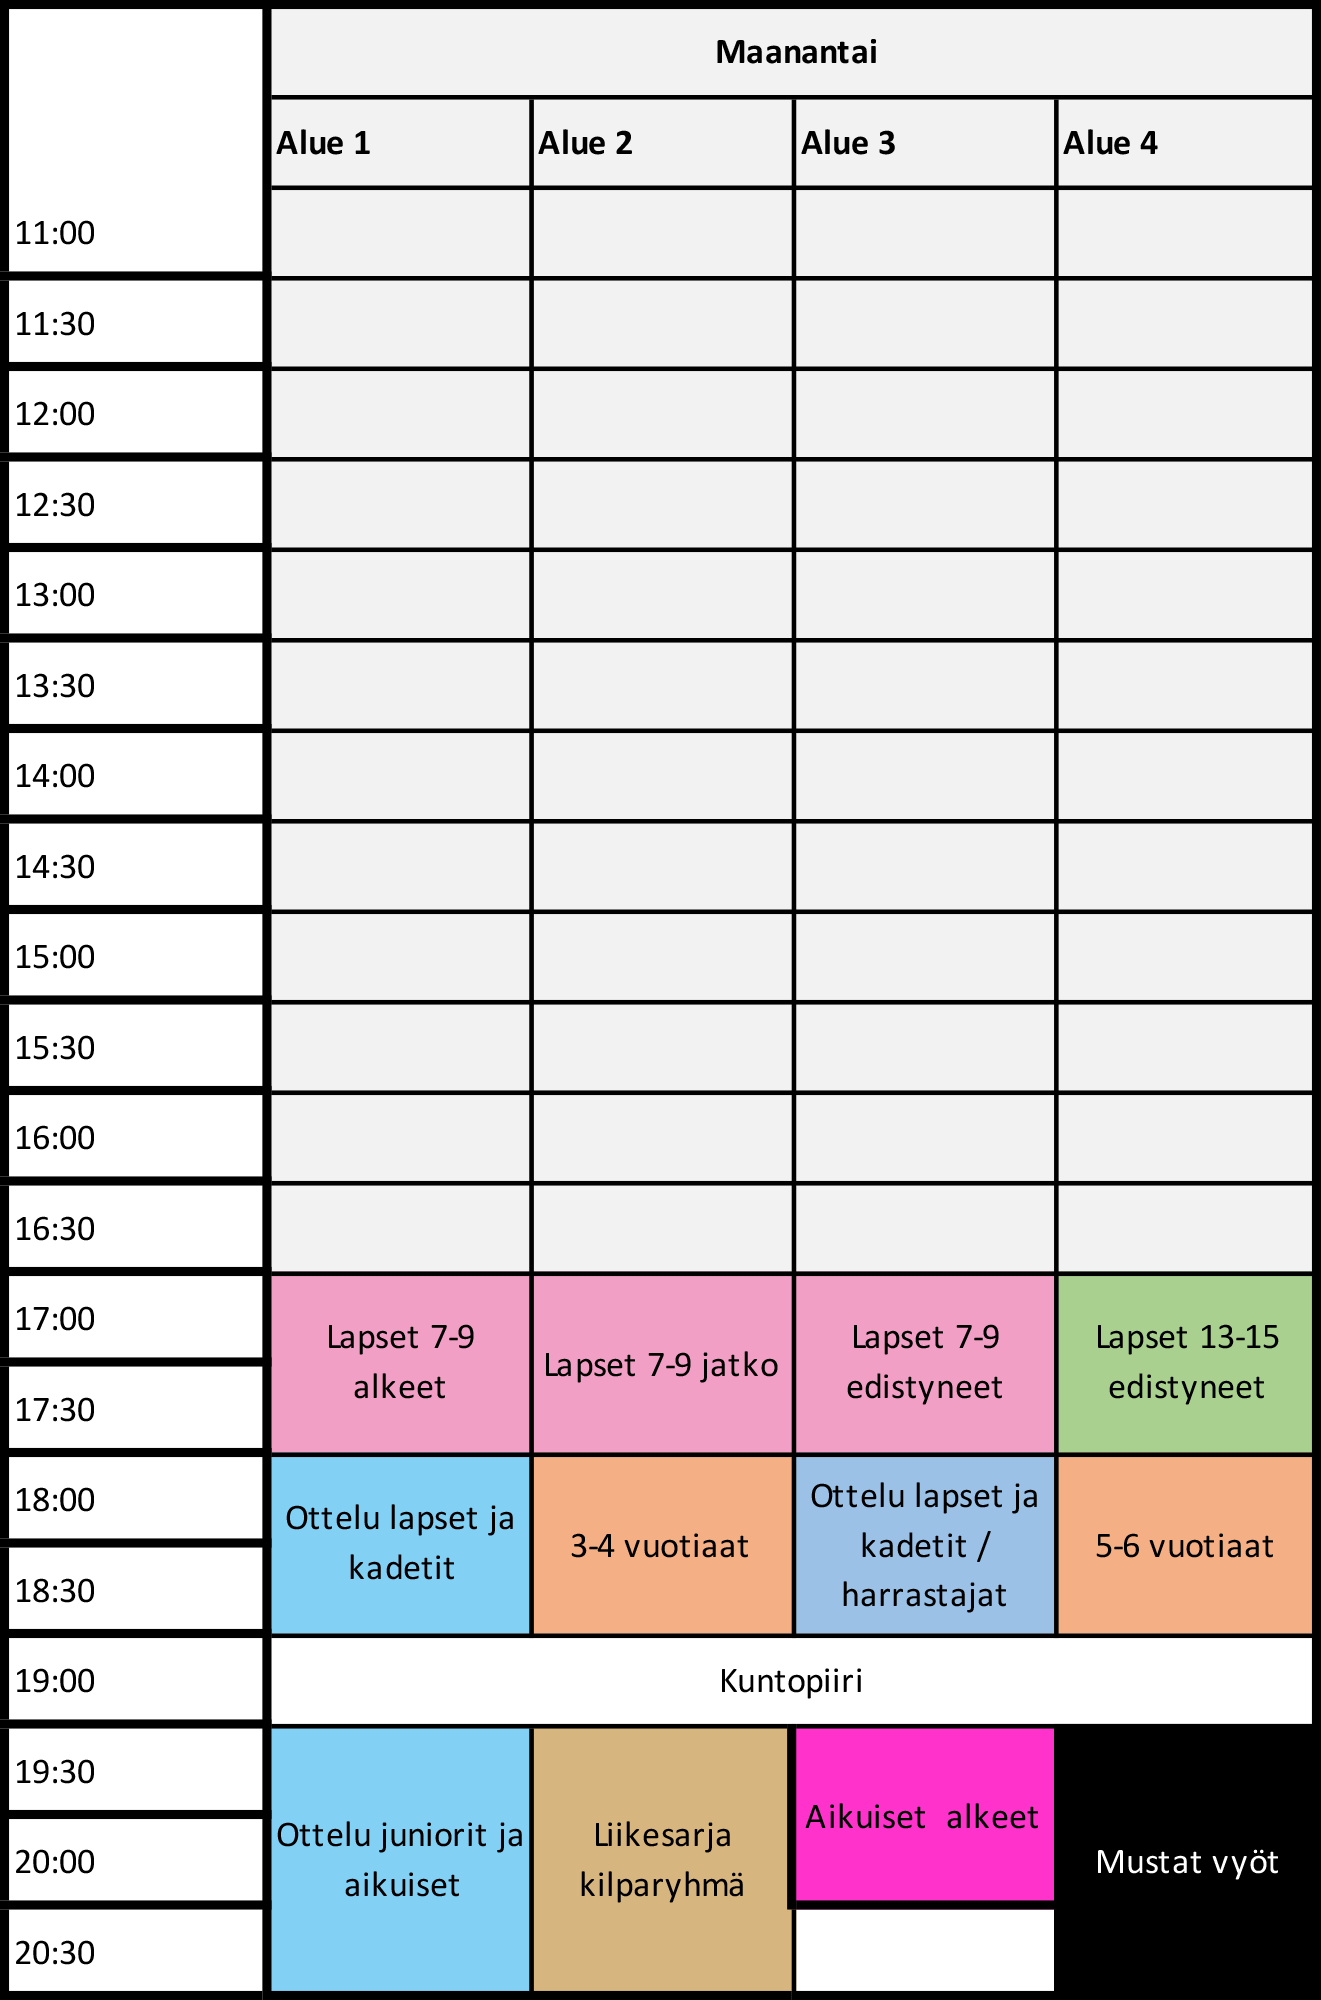 جدول تمارين التايكوندو يوم الاثنين